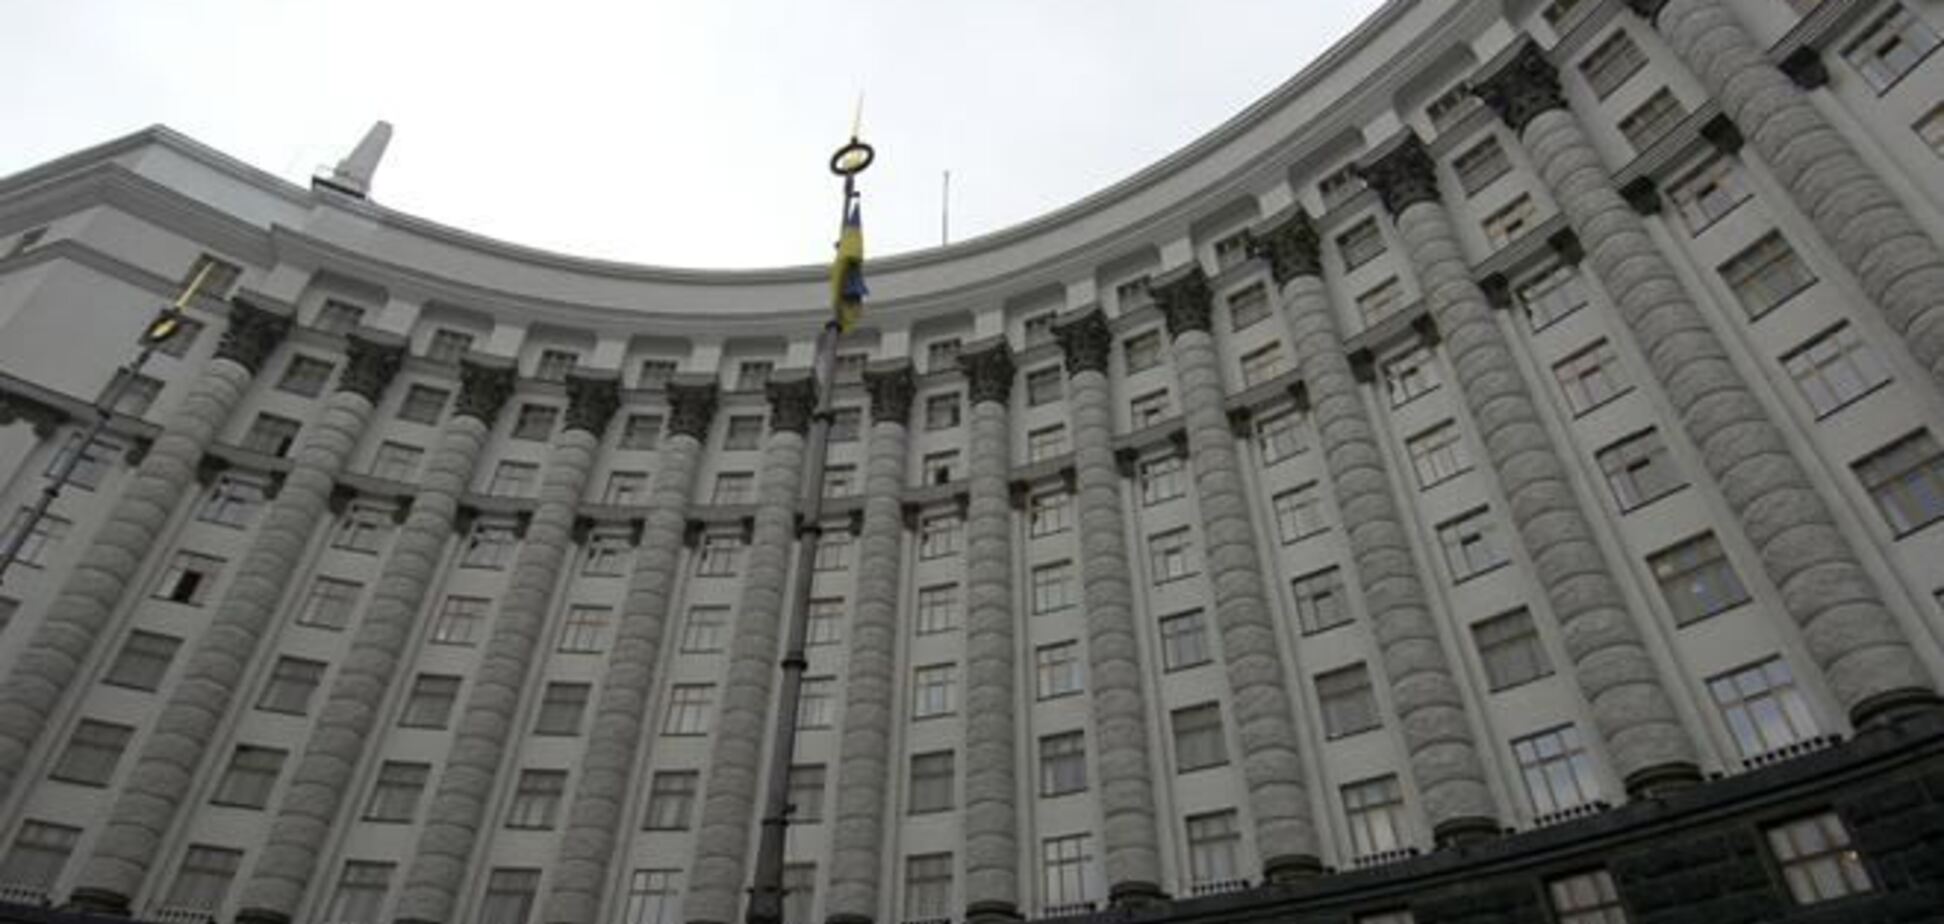 Кабмин готовит документы о введении ЧП на части территории Киева - СМИ